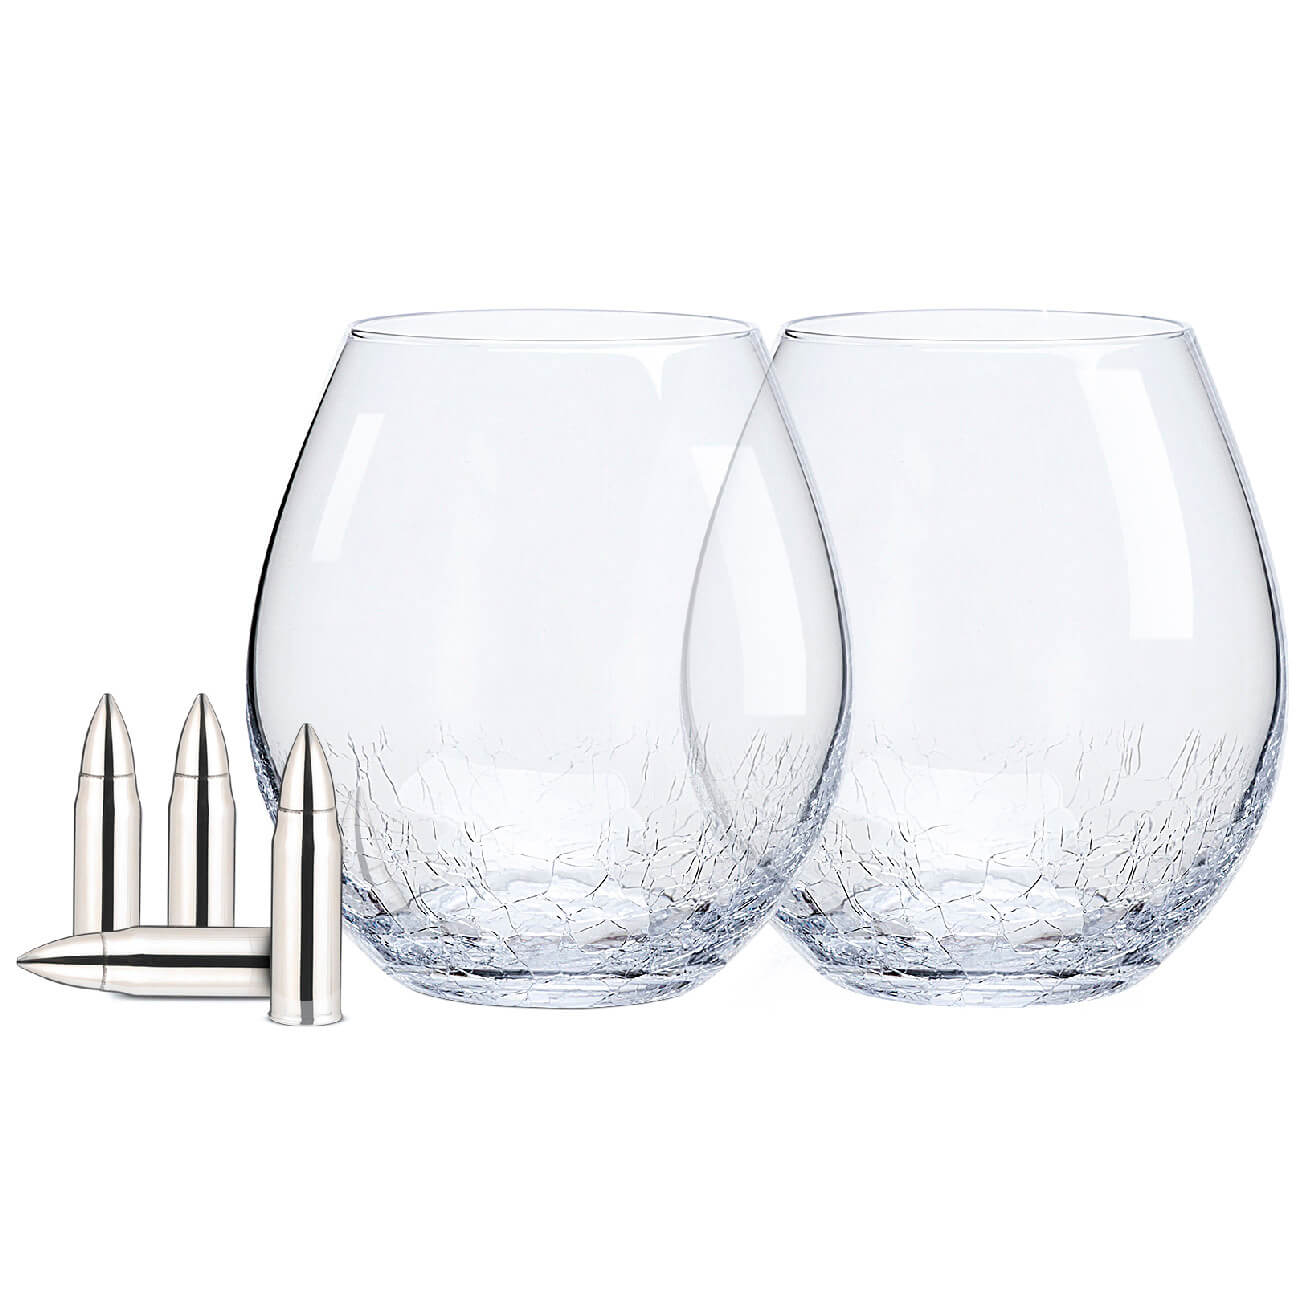 Набор для виски, 2 перс, 6 пр, стаканы/кубики, стекло/сталь, Кракелюр, Пули, Bullet стаканы для виски tescoma